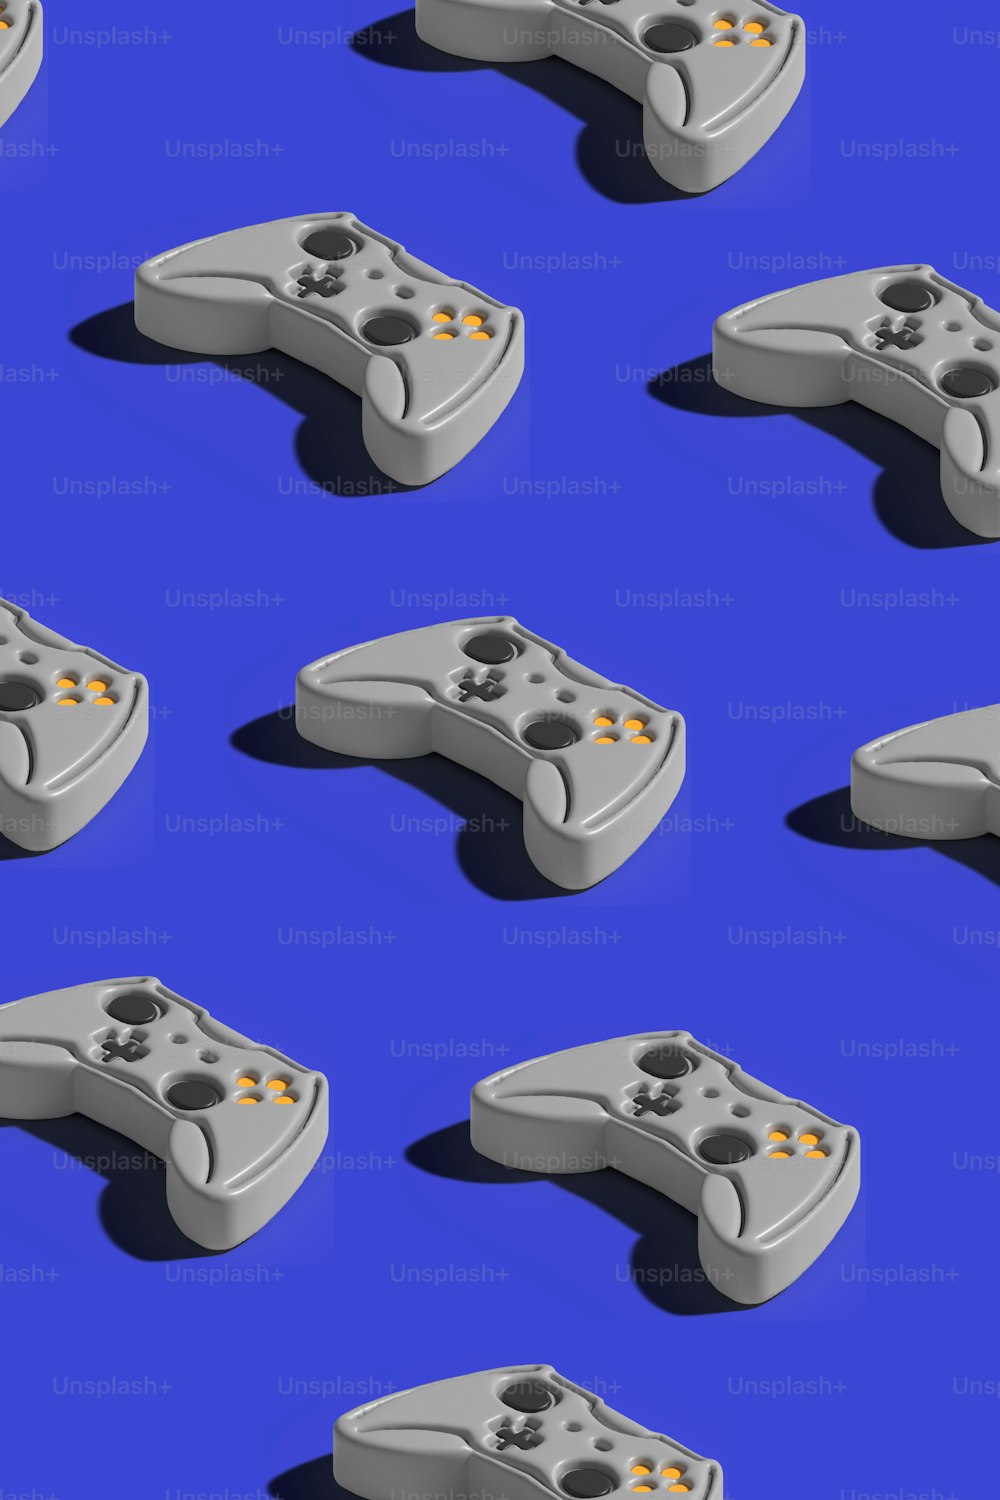 Un tas de contrôleurs de jeux vidéo sur fond bleu